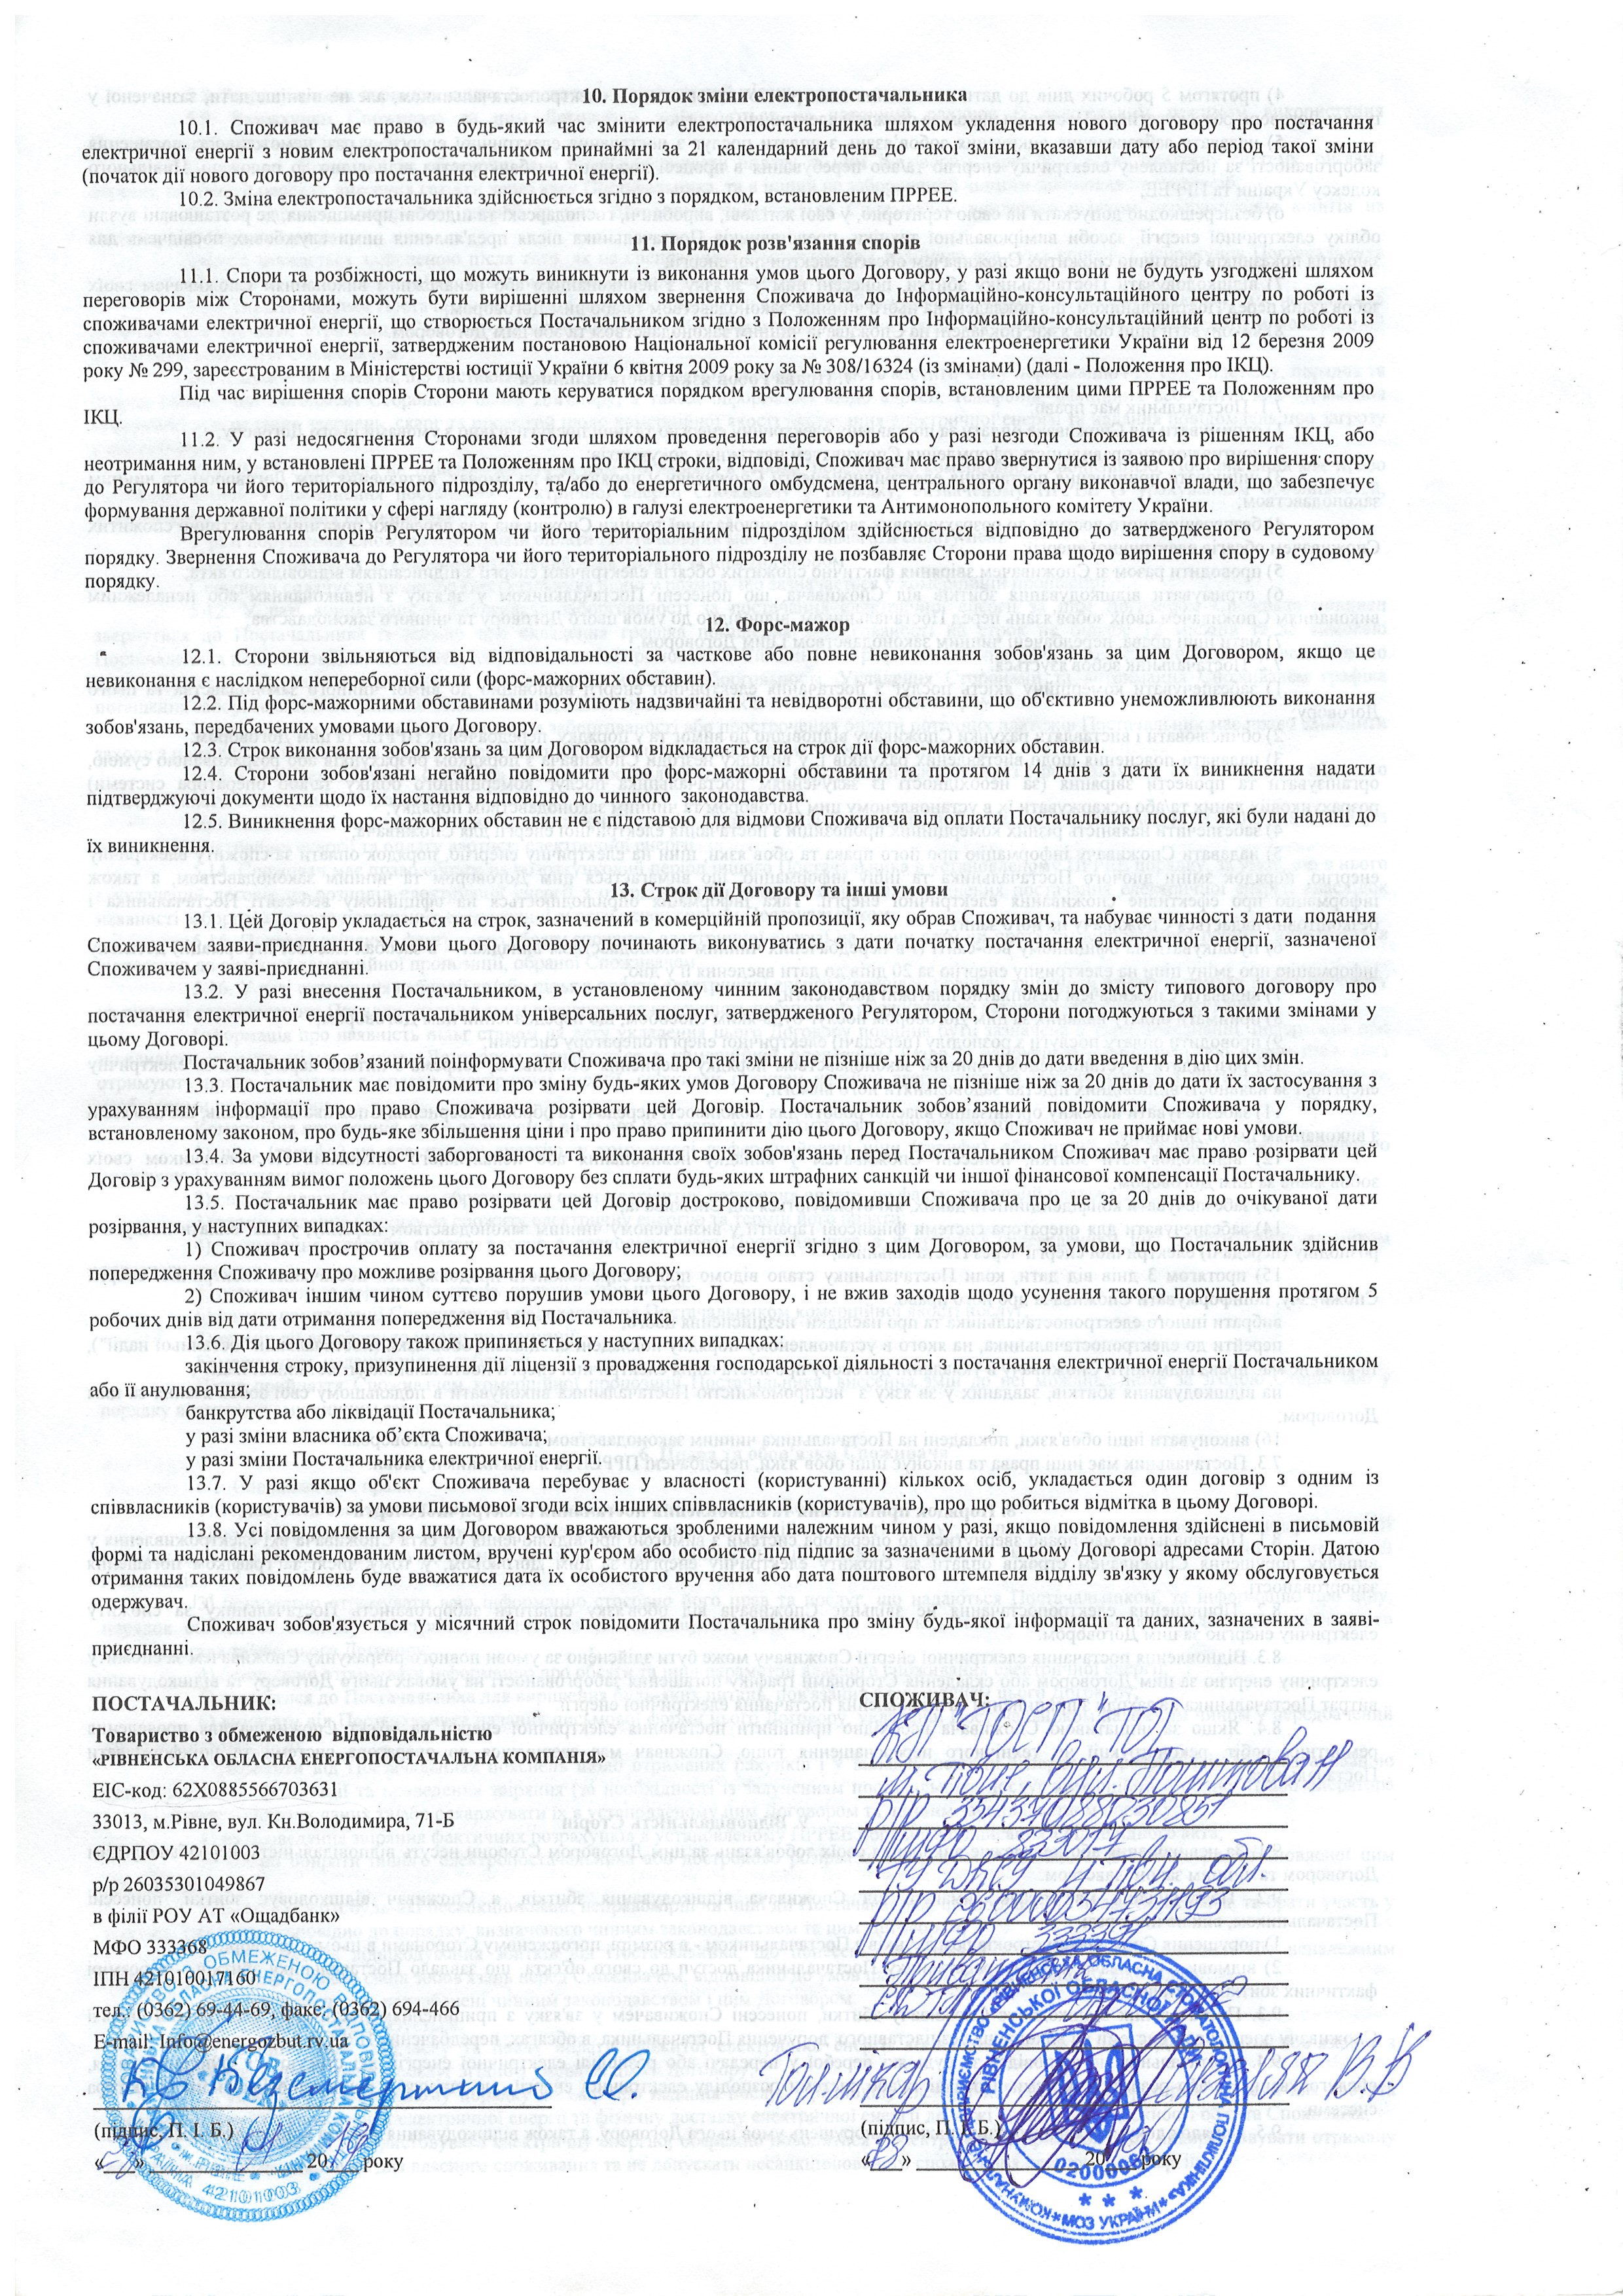 Договір №480001576 про постачання електричної енергії  постачальником універсальних послуг ст.4